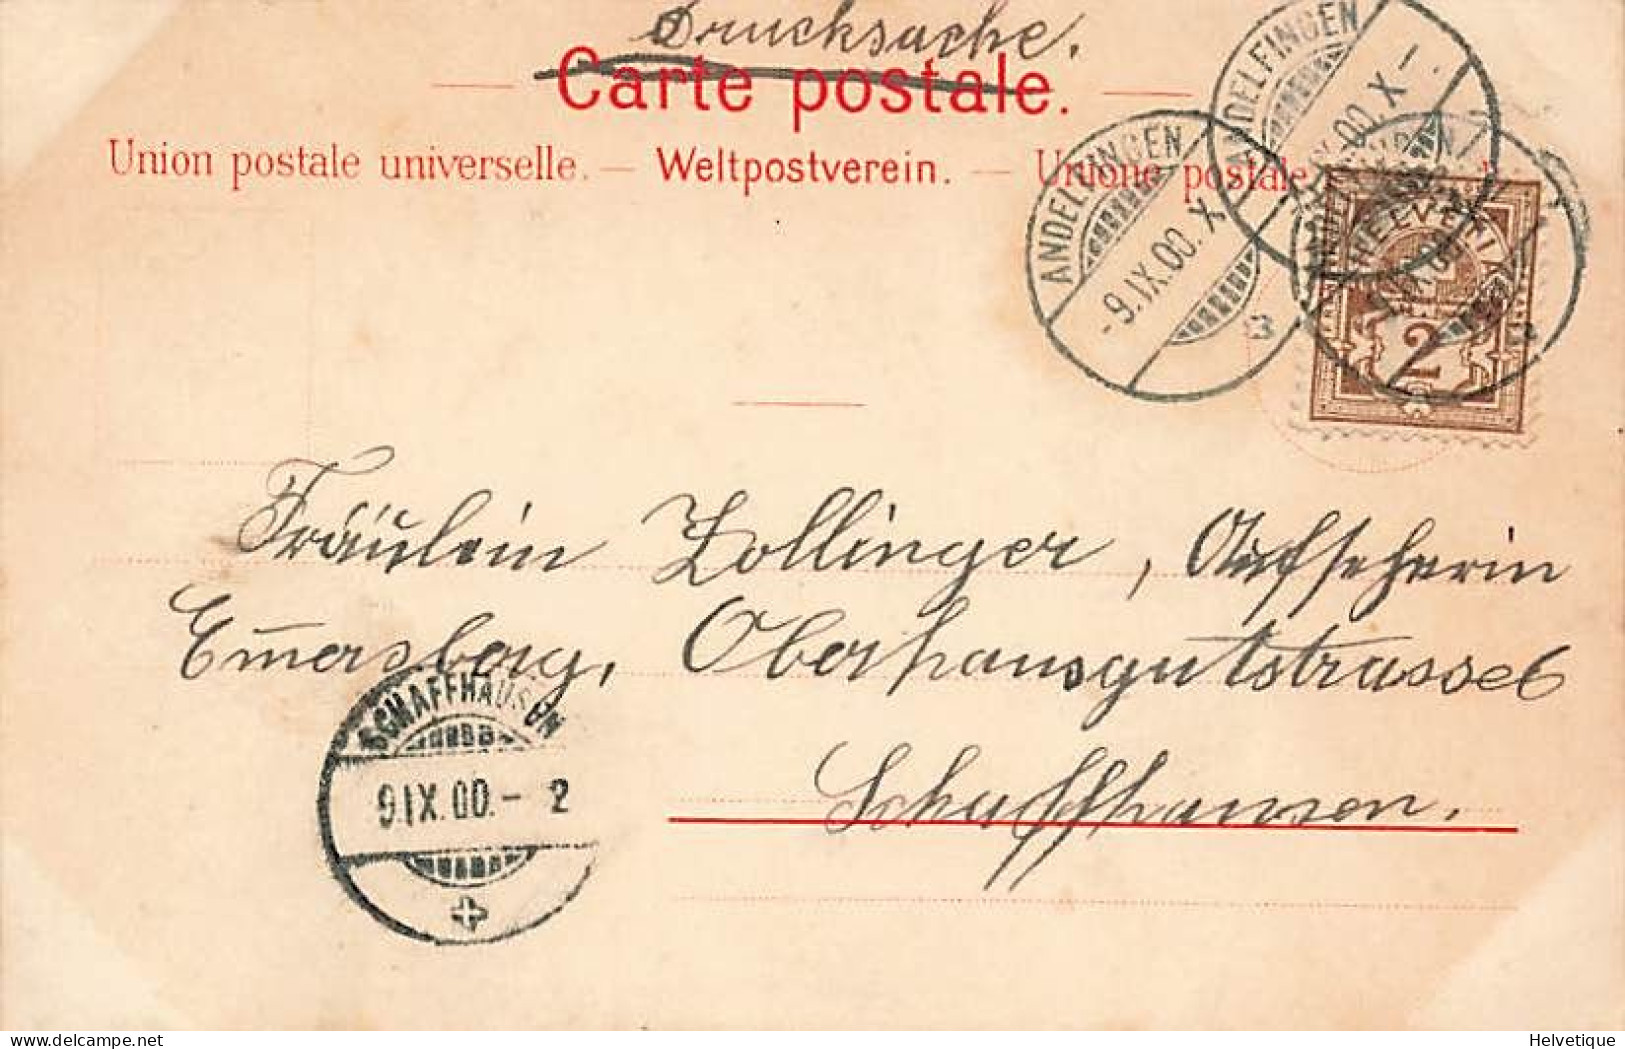 Timbres Poste Suisses Schweizer Briefmarken 1900 Rayon 5 RP Poste De Genève Orts Post - Briefmarken (Abbildungen)